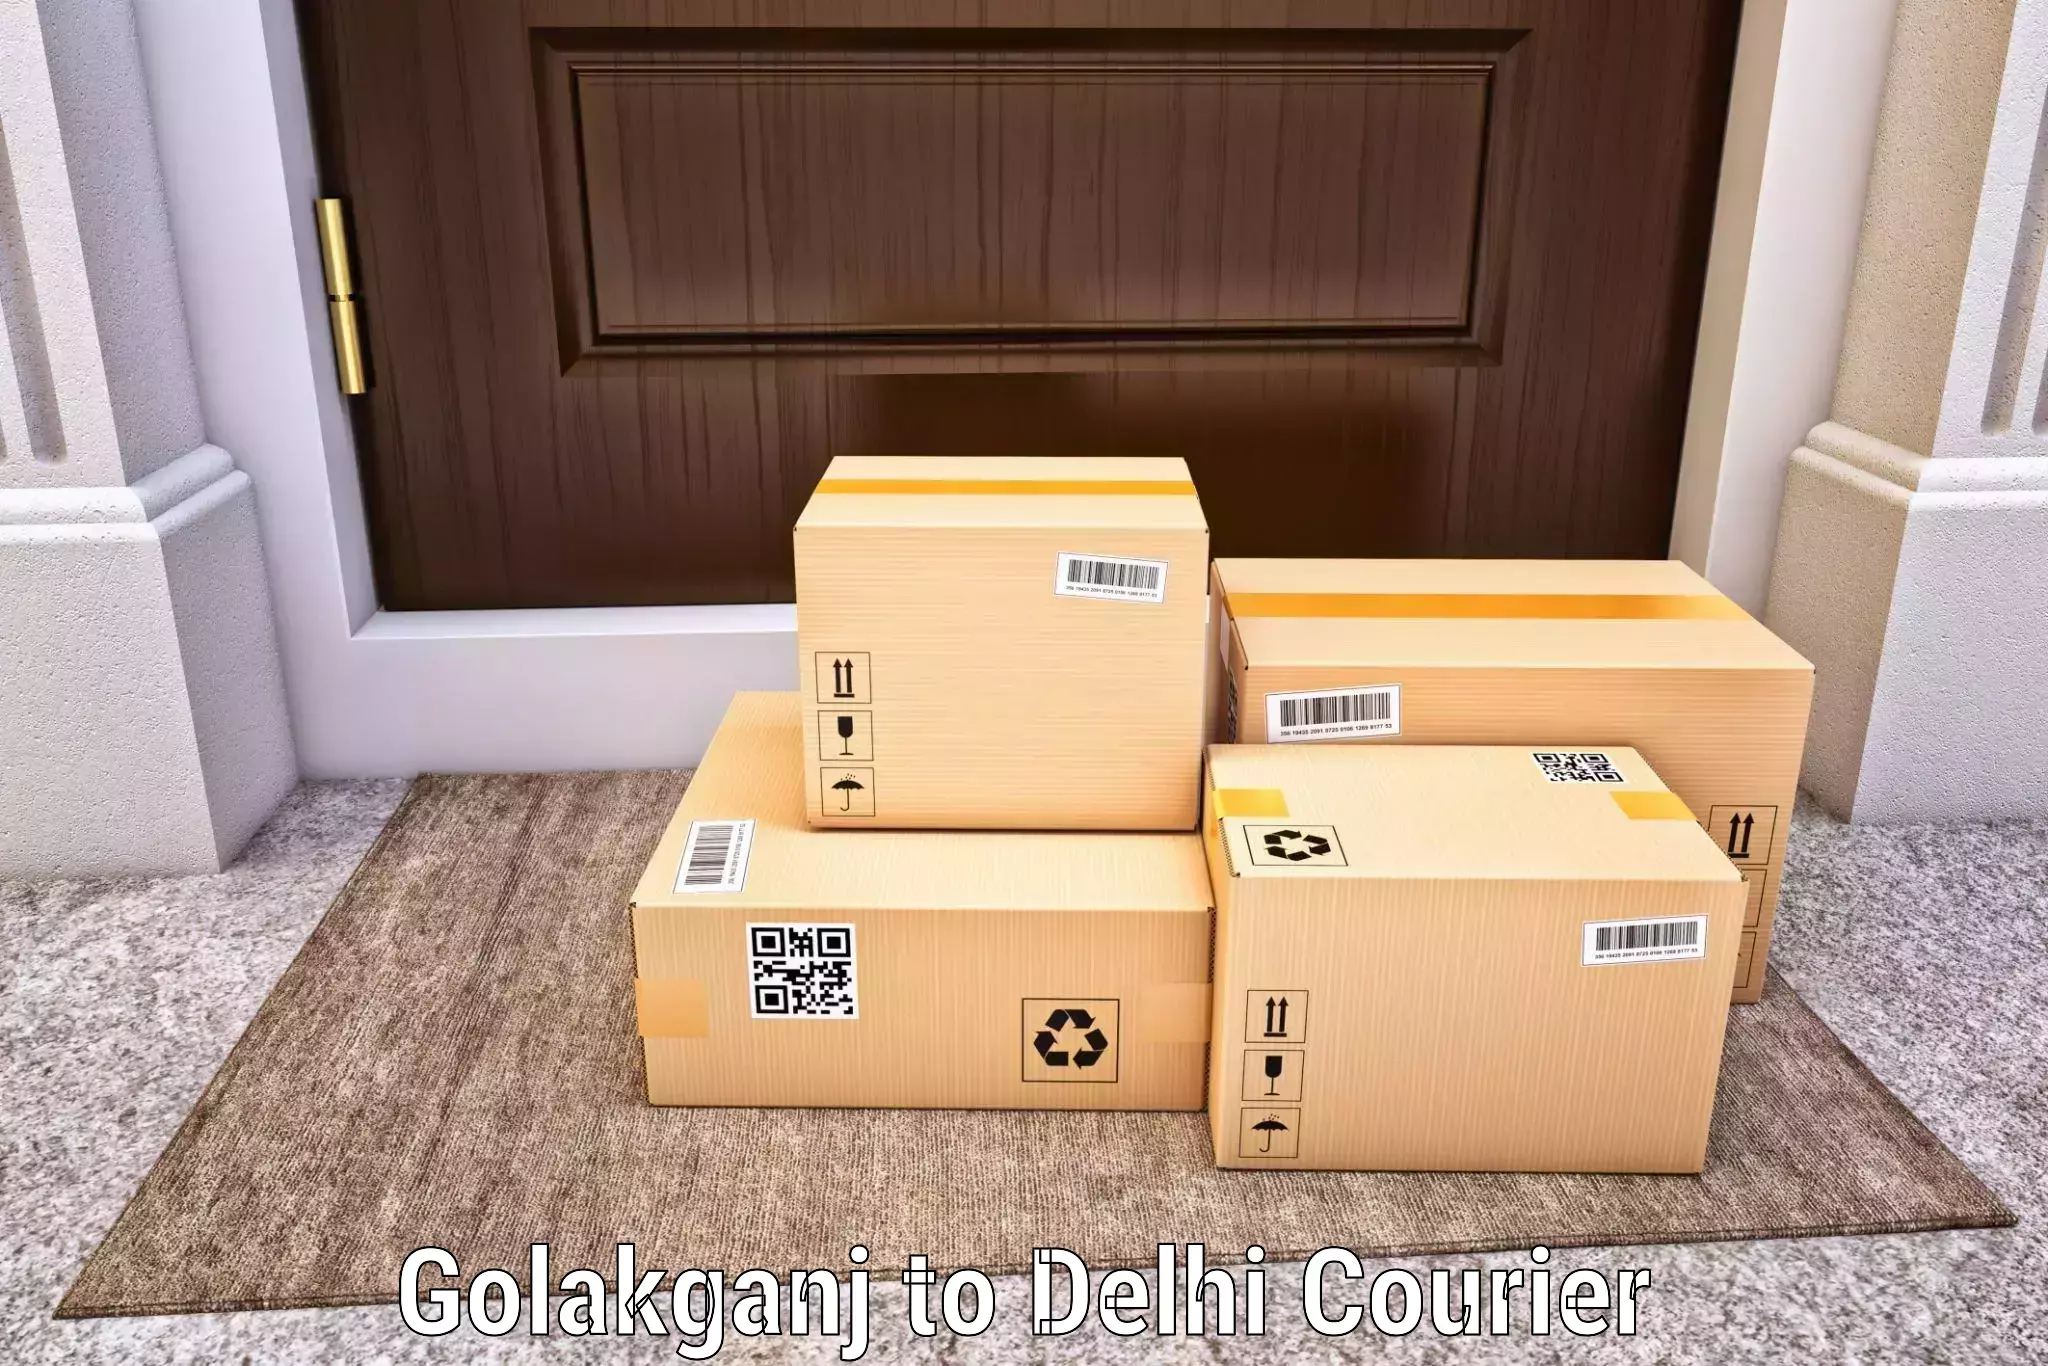 Door-to-door freight service Golakganj to Burari